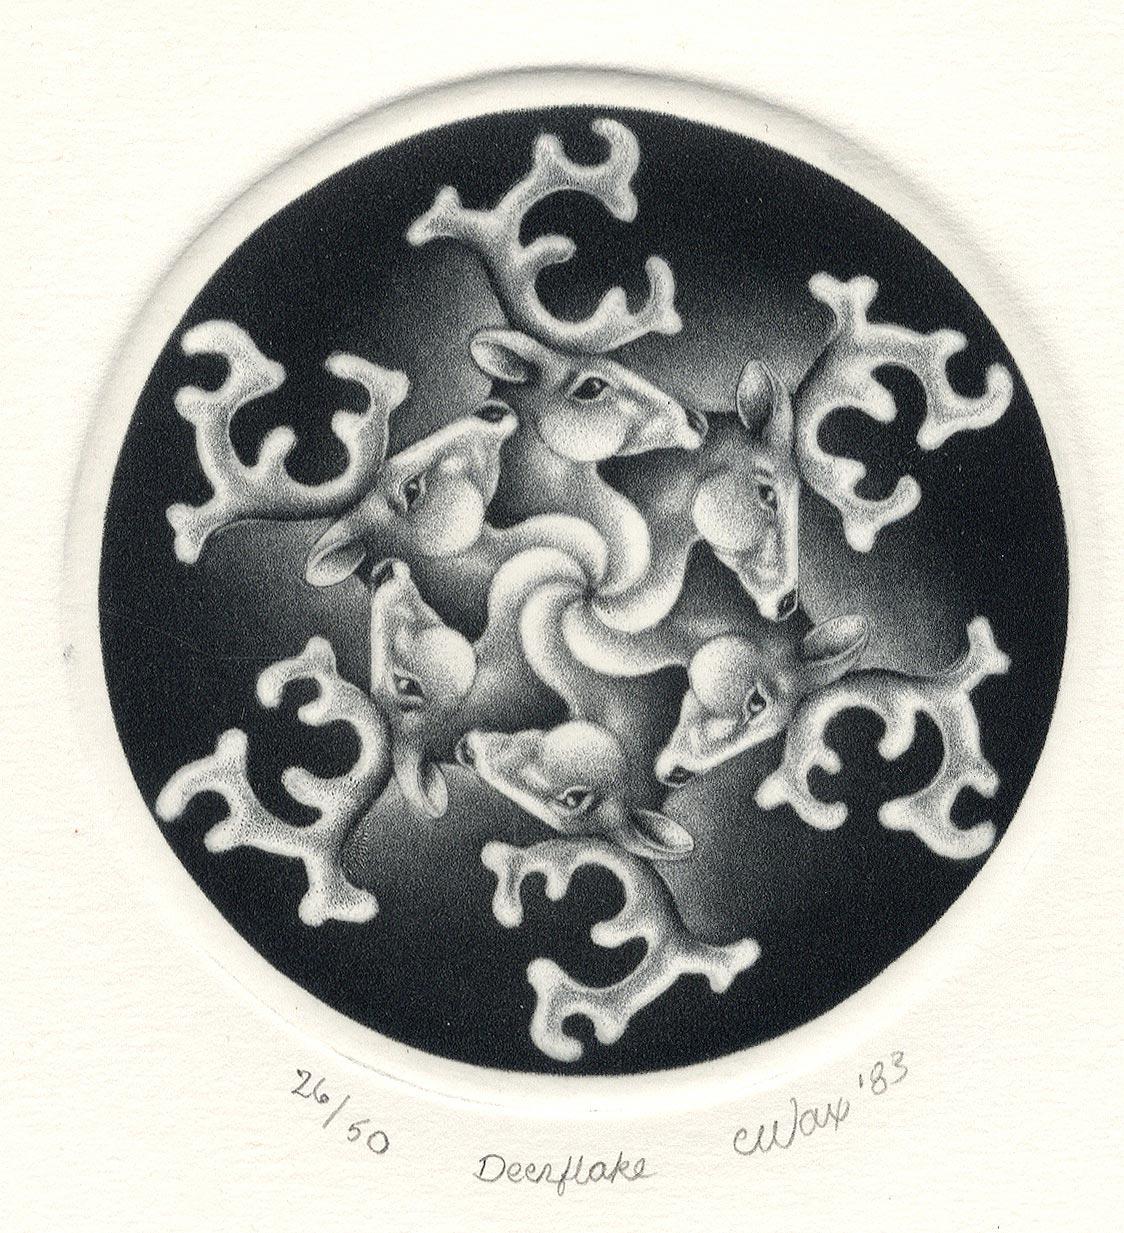 Carol Wax Abstract Print - Deerflake (The artist's first work celebrating the Solstice / deer as snowflake)